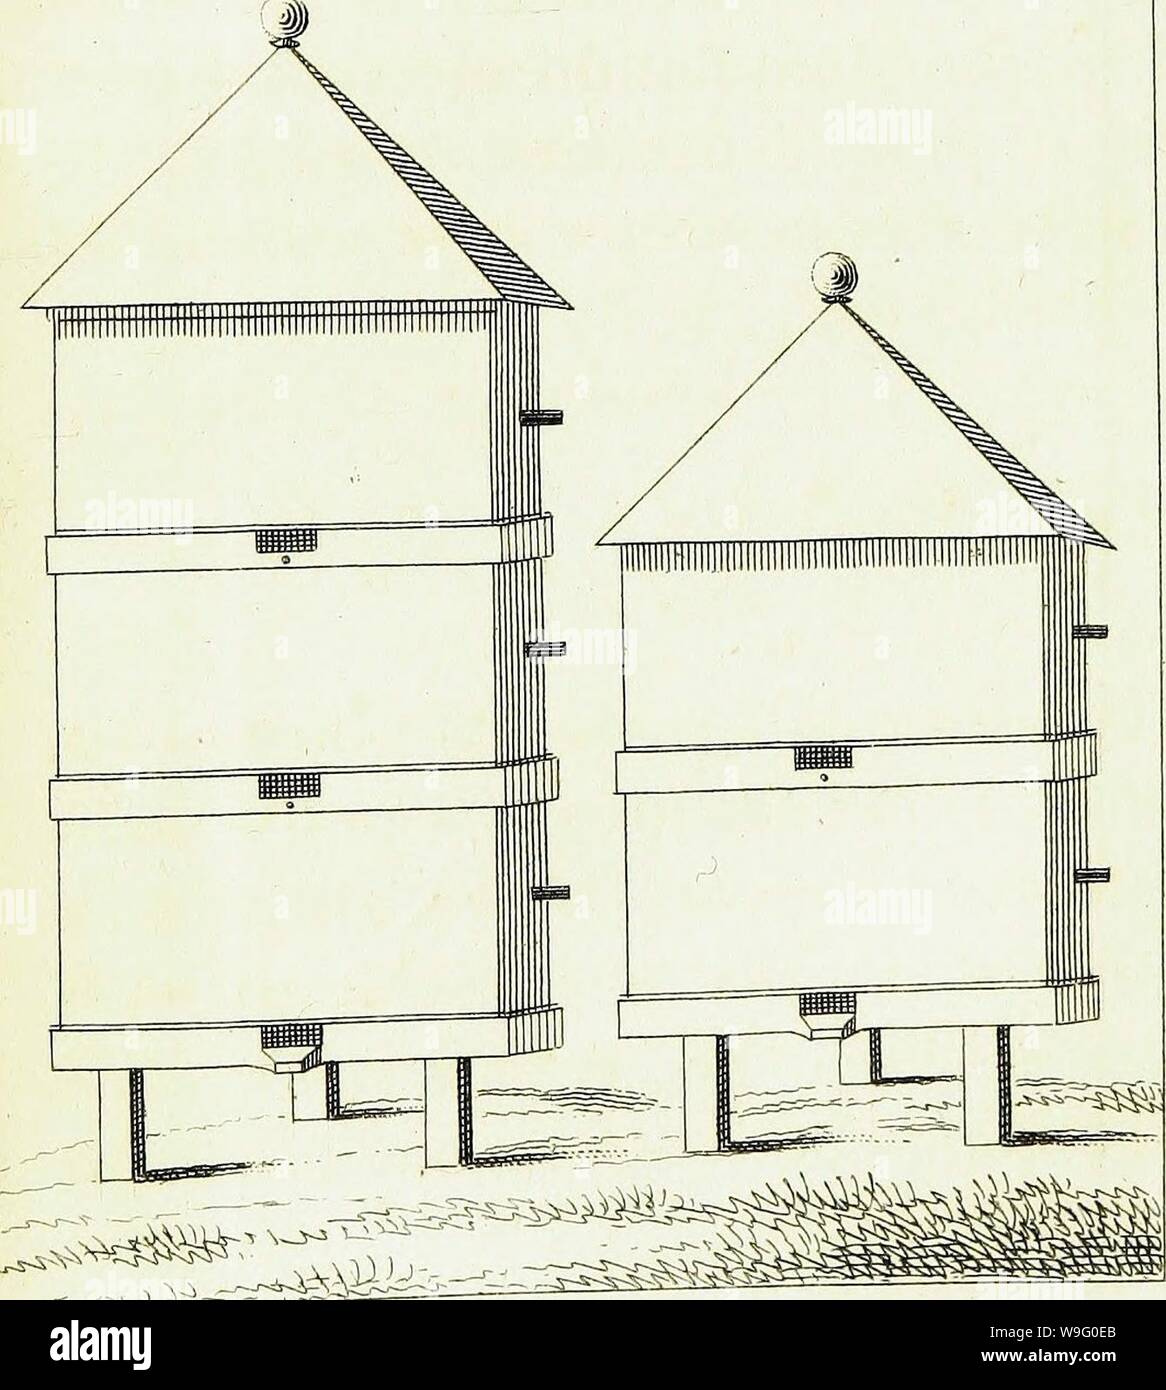 Archiv Bild von Seite 86 der "Traité sur le Gouvernement des. "Traité sur le Gouvernement des abeilles CUbiodiversity Jahr: 1816 1178837 (jV. 4-Faye-yo Stockfoto